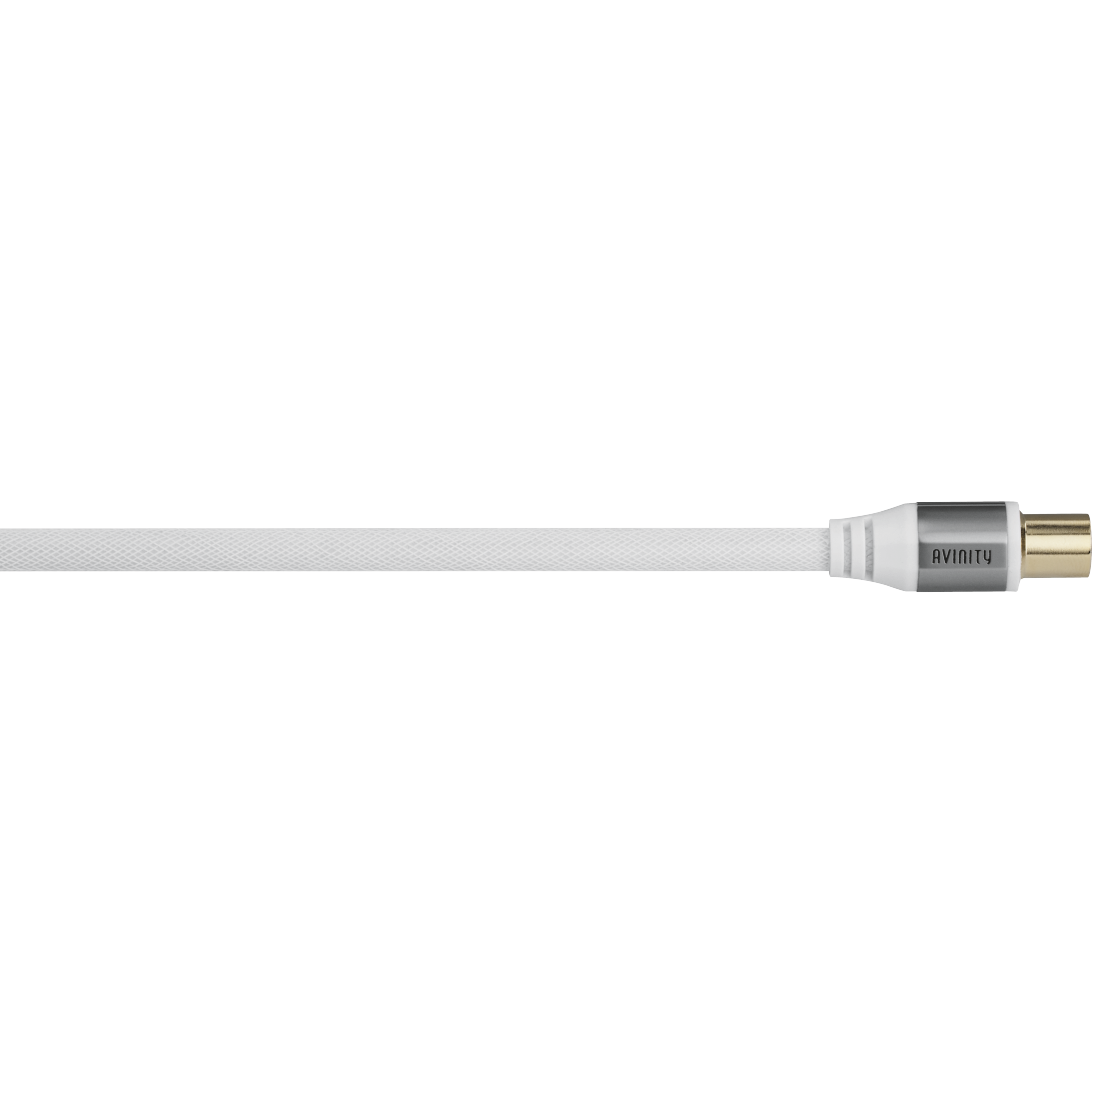 abx Druckfähige Abbildung - Avinity, Antennen-Kabel, Koax-Stecker - Koax-Kupplung, Gewebe, verg., 110 dB, 5,0 m